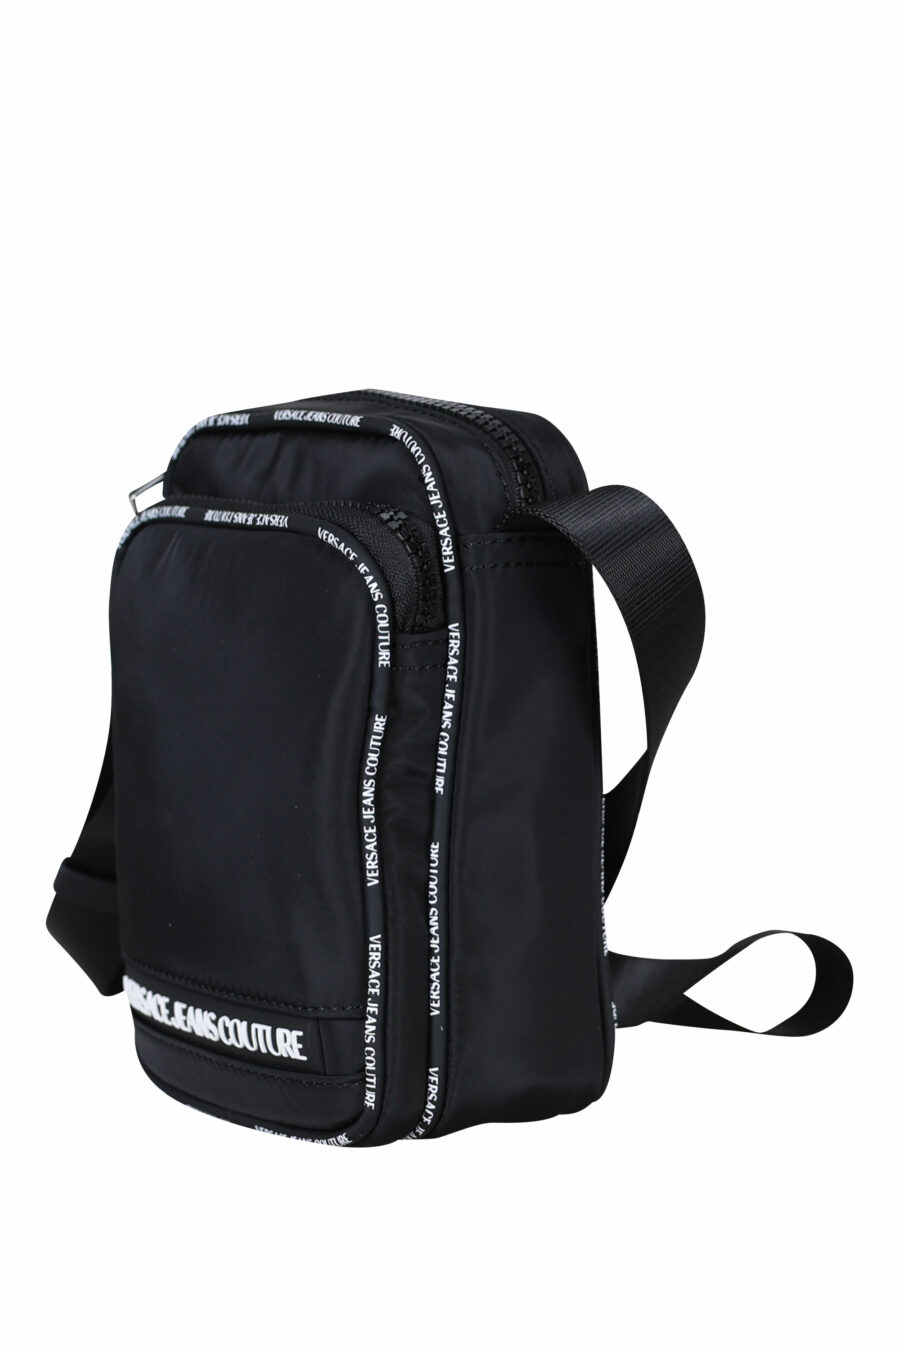 Schwarze Crossbody-Tasche mit weißem Mini-Logo-Schriftzug" auf Band - 8052019409307 1